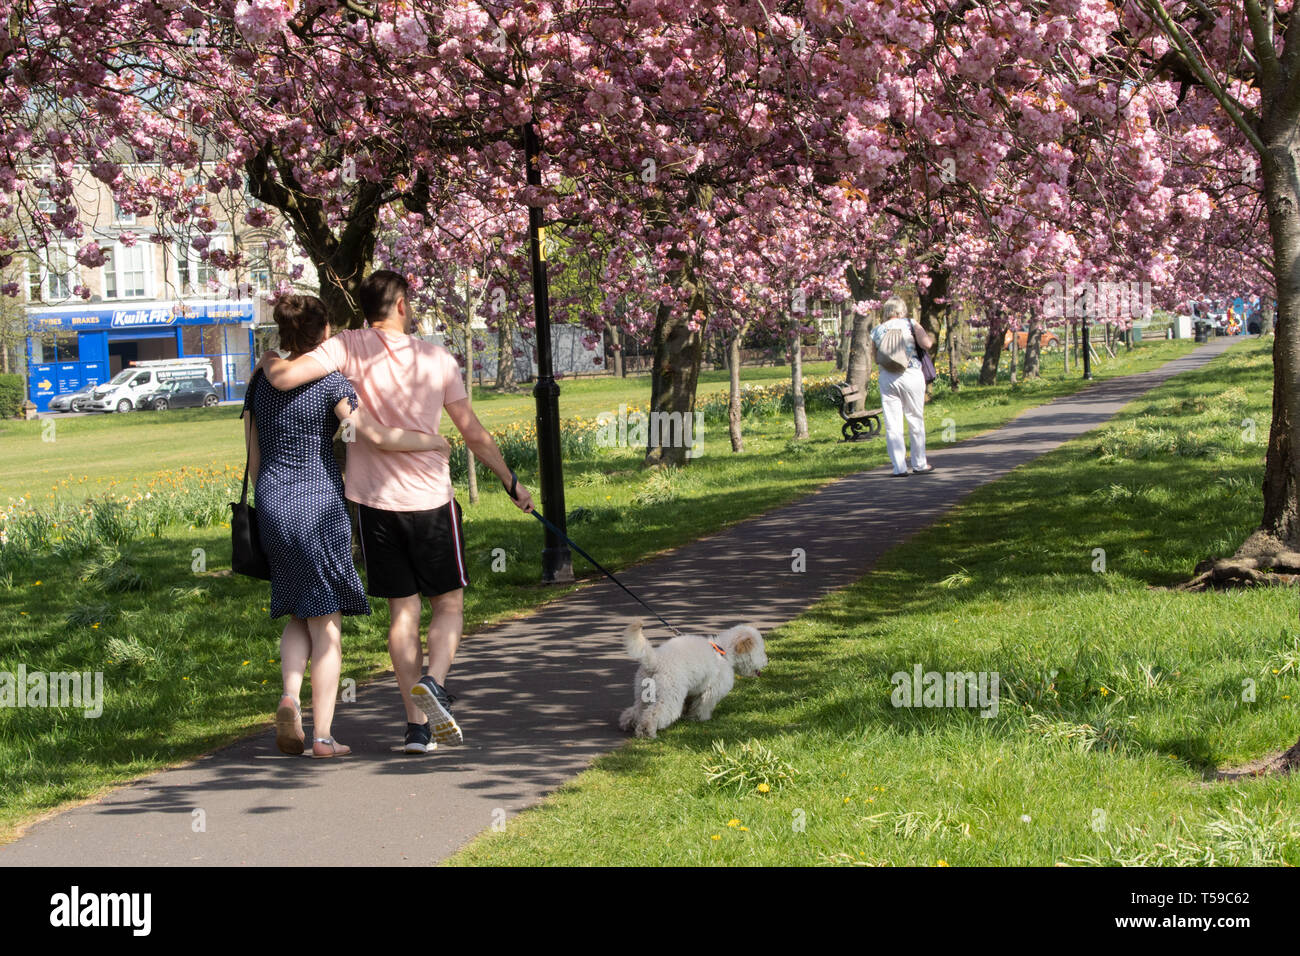 Un couple avec leurs bras autour l'un de l'autre marchant leur chien sous le cerisier rose Blossom, ery rein, Harrogate, North Yorkshire, Angleterre, ROYAUME-UNI. Banque D'Images